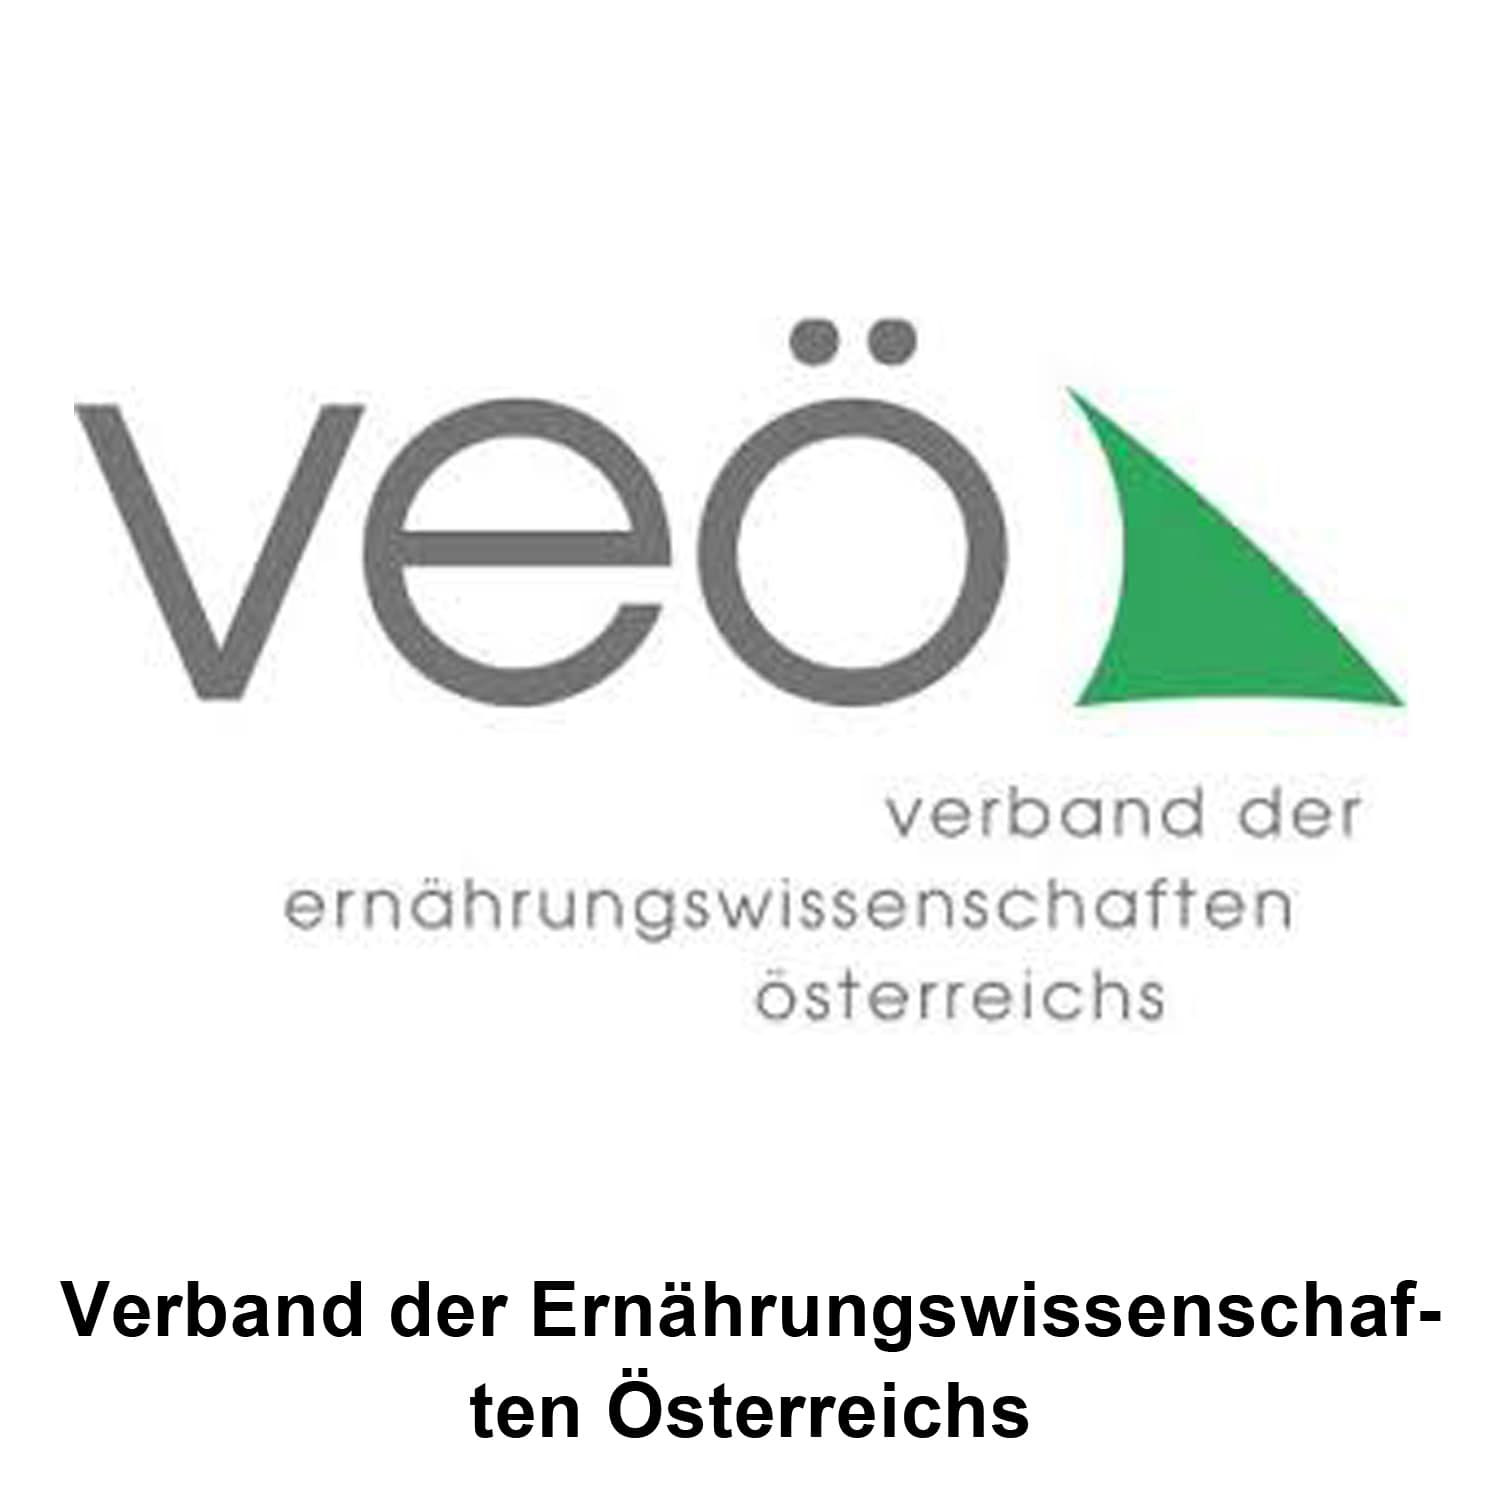 Verband der Ernährungswissenschaften Österreichs - VEÖ